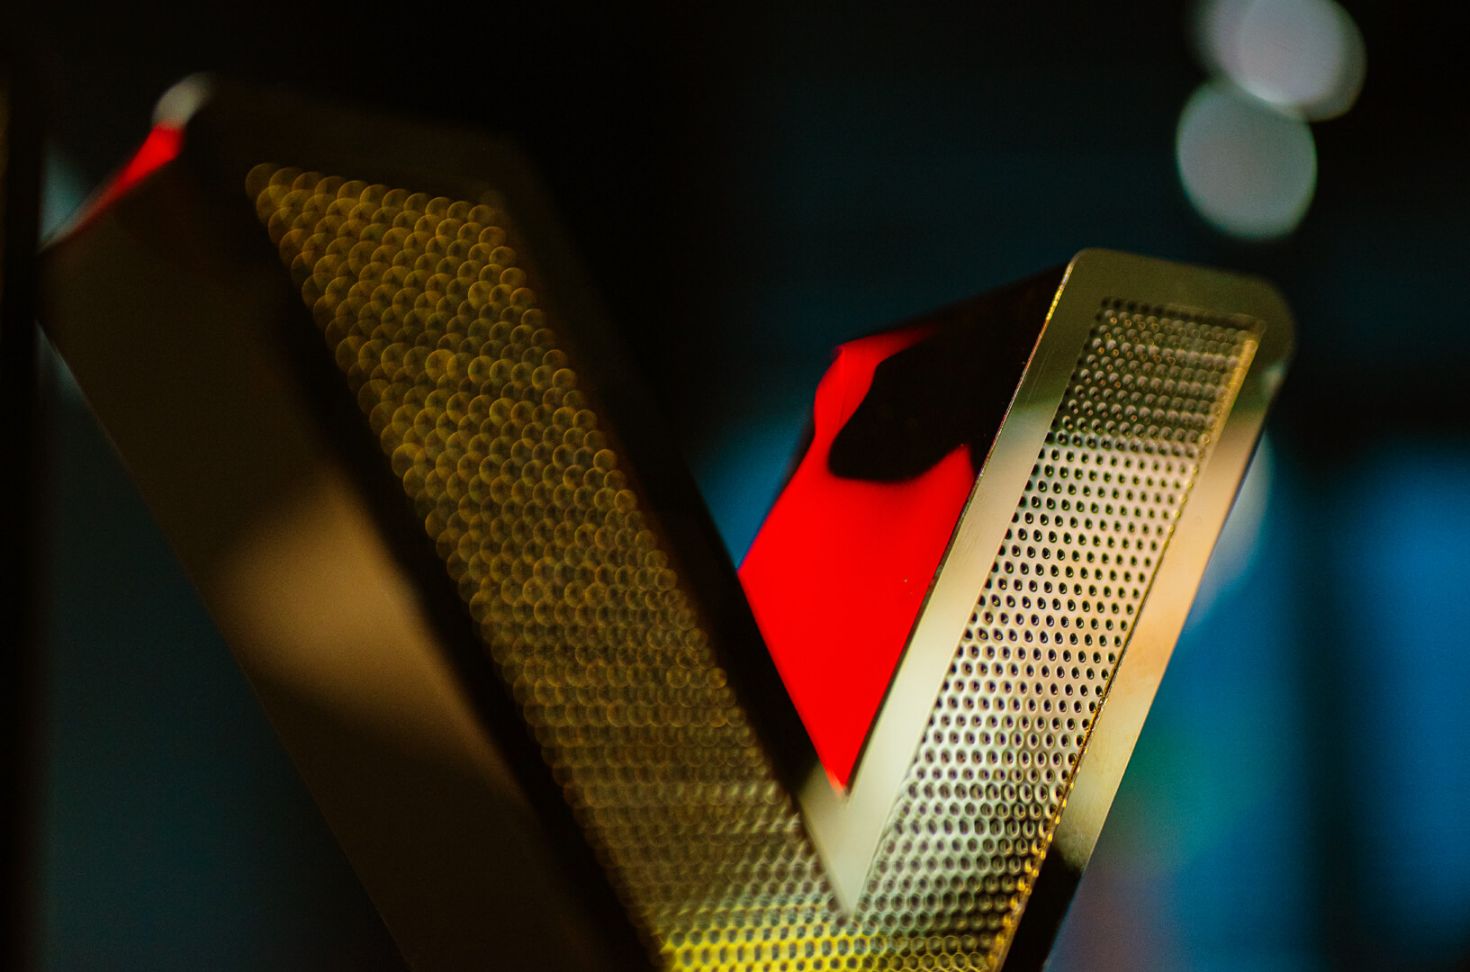 Tôle perforée or - Lettre en tôle perforée dorée, rétro-éclairée par LED.